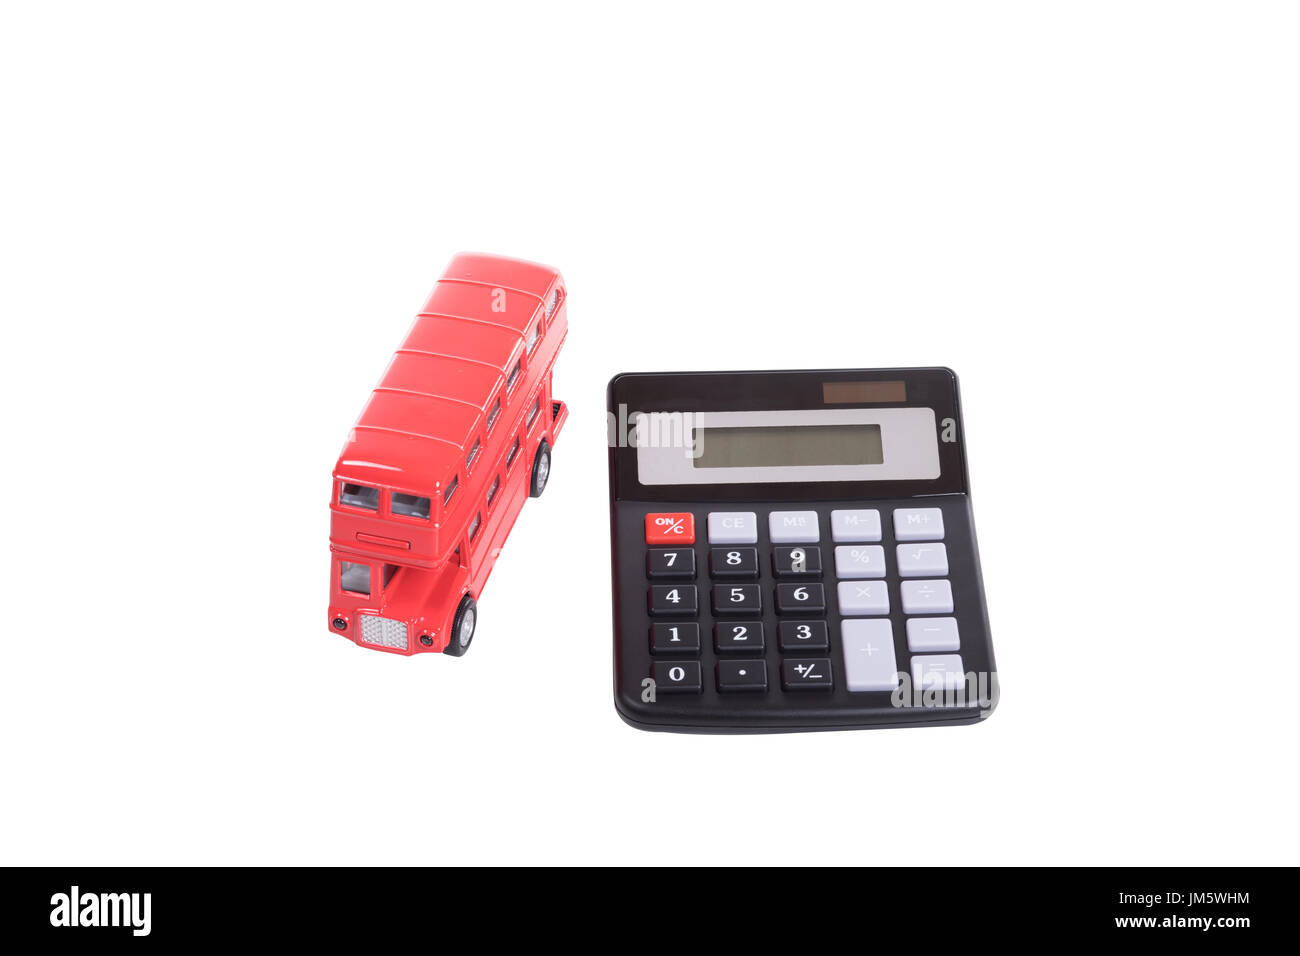 Jouet rouge double-decker bus britannique et calculatrice dans un concept de coûts de transport et les transports publics isolated on white Banque D'Images